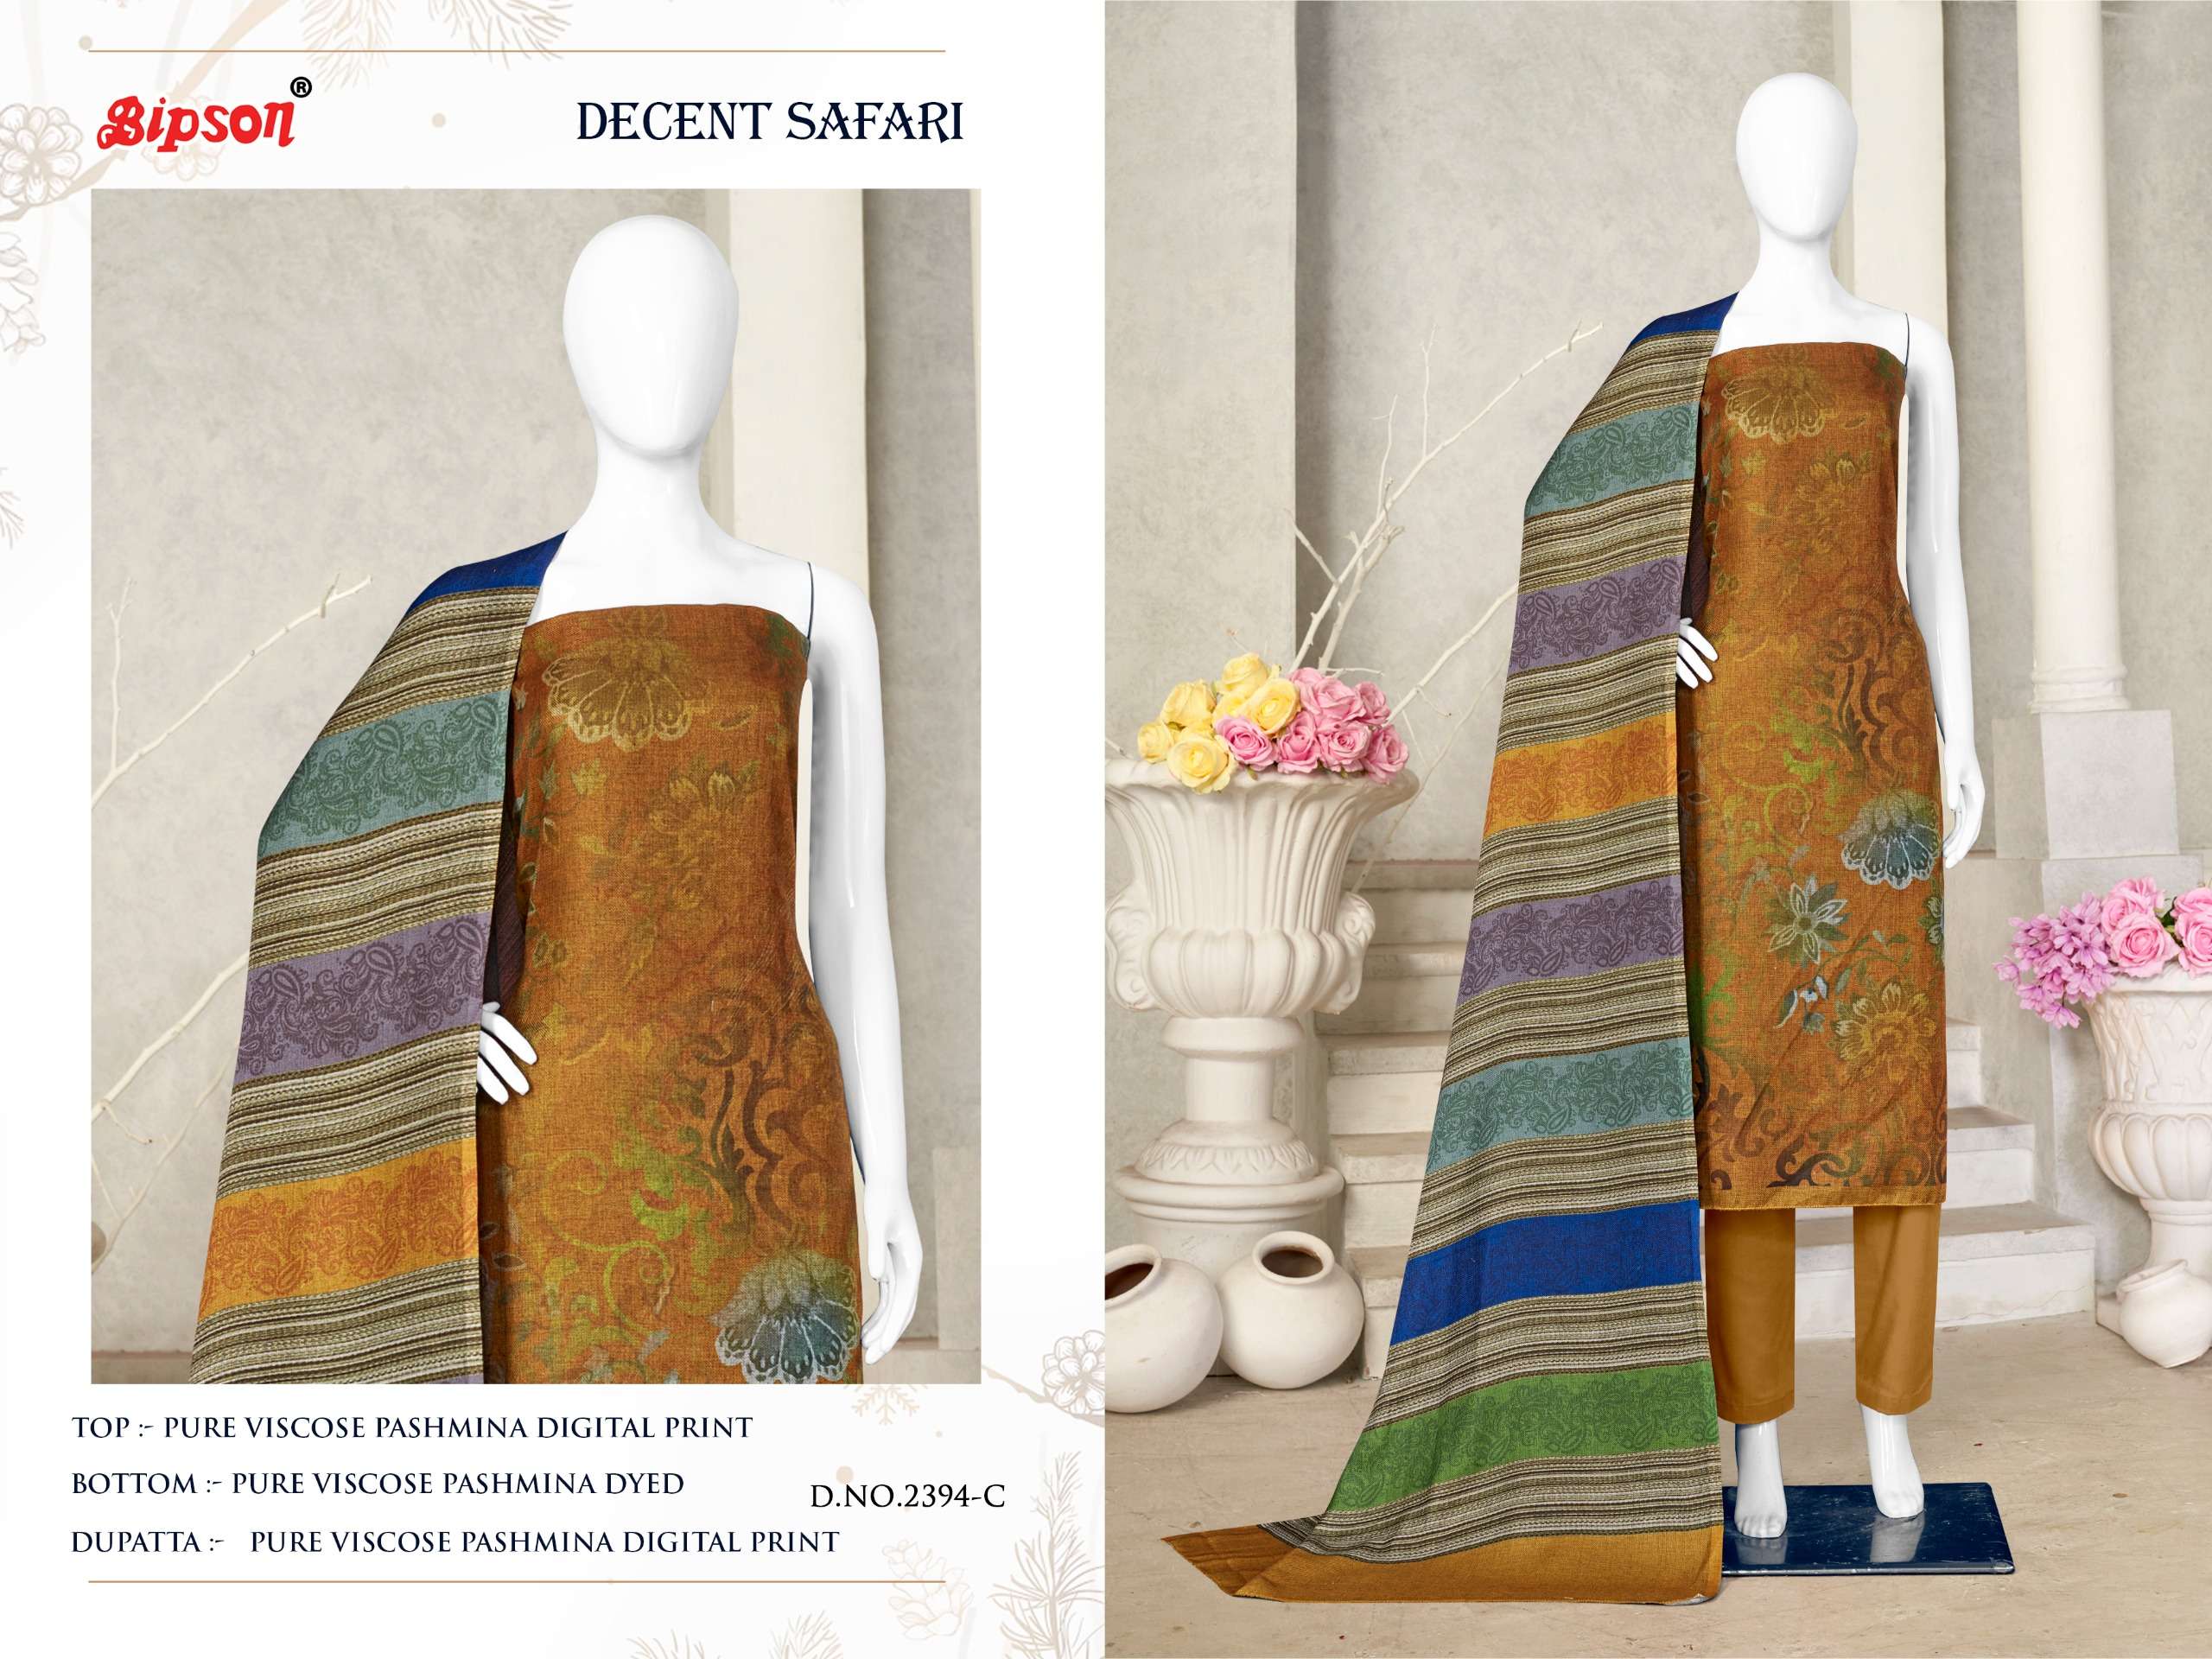 Bipson Decent Safari 2394 Viscose Digital Printed Dress Material Wholesale catalog